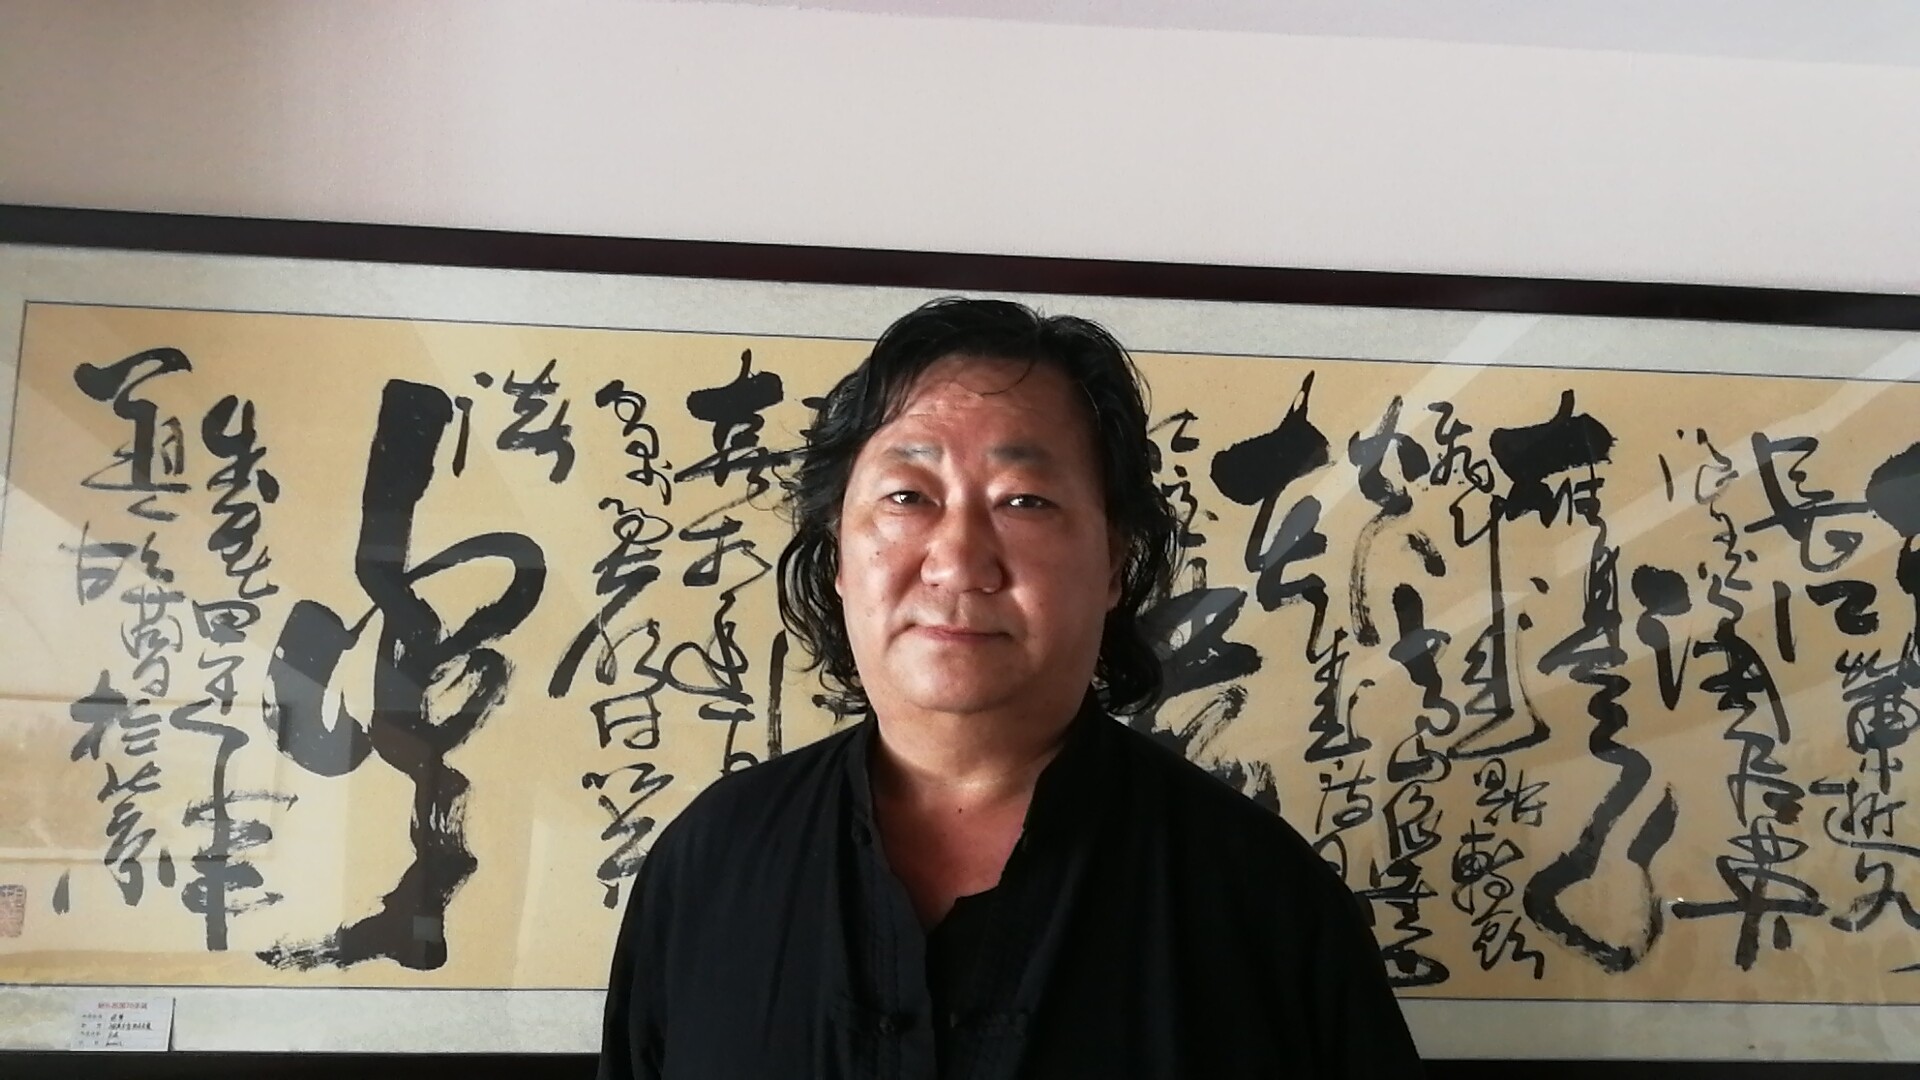 现任中国国际和谐基金会书画院院长,中华名人艺术书画院(香港注册)